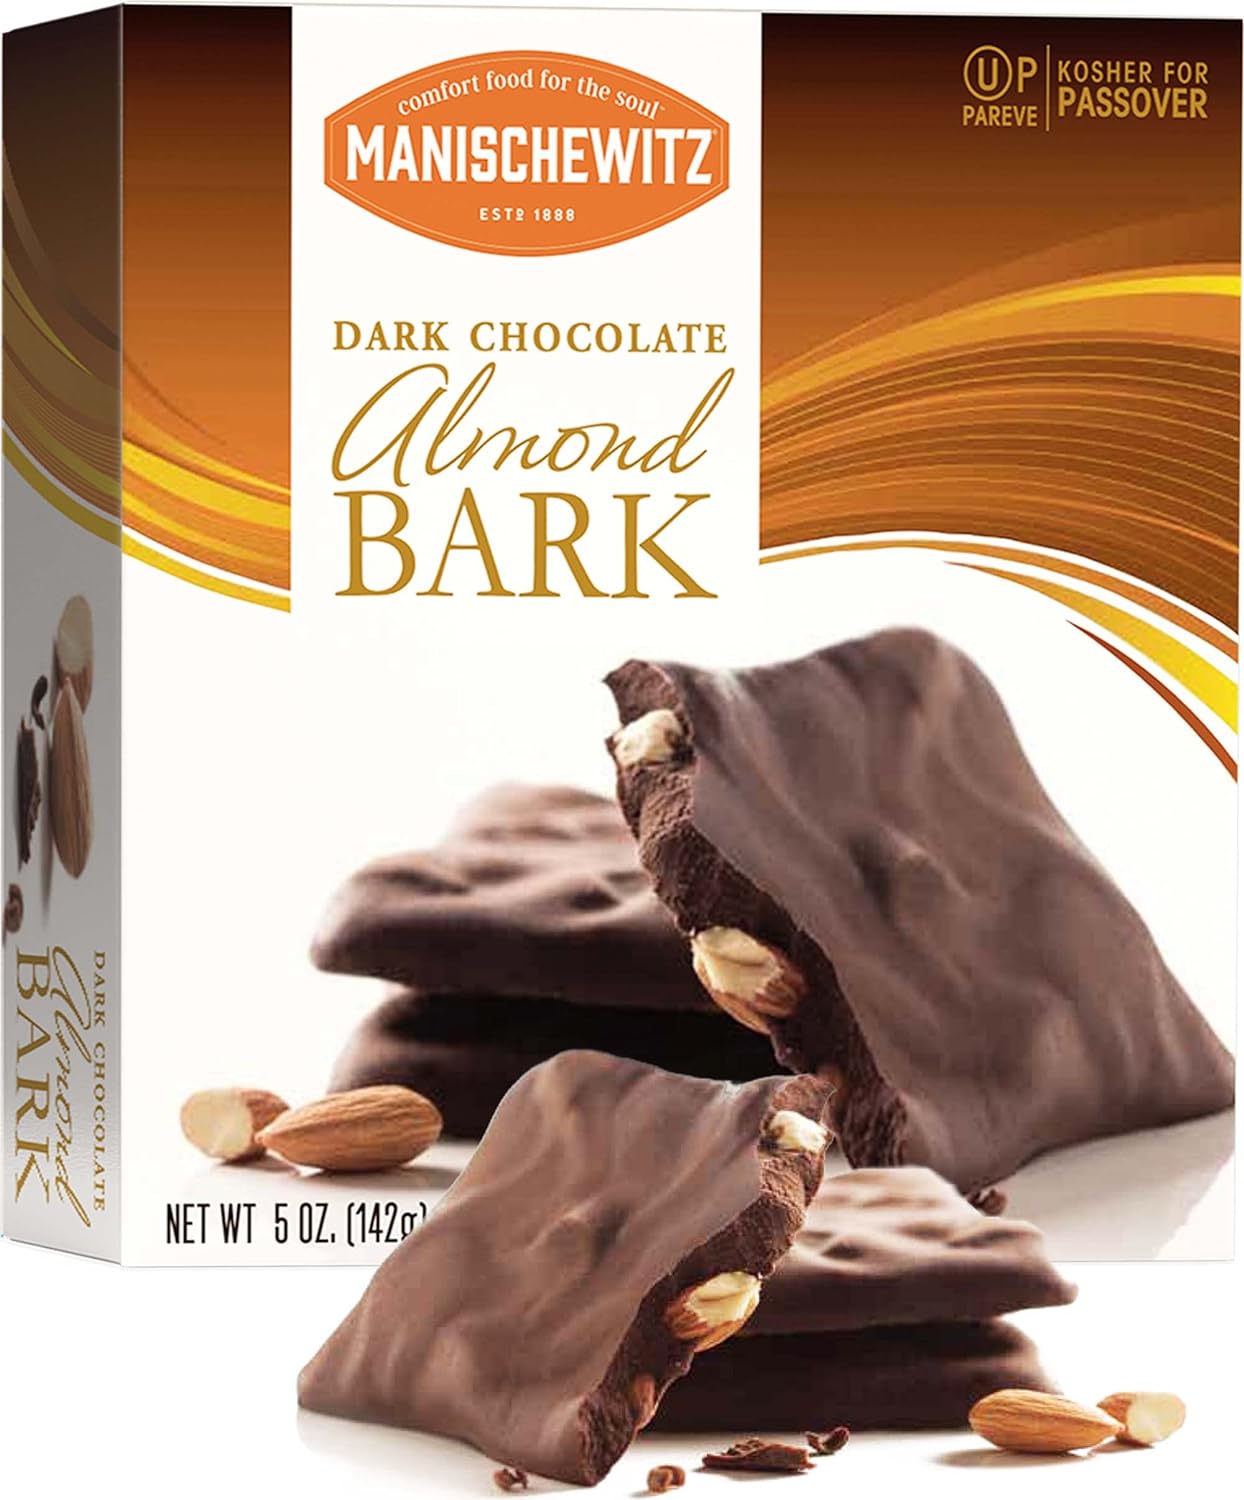 Manischewitz Dark Chocolate Almond Bark Gift Box 5 oz